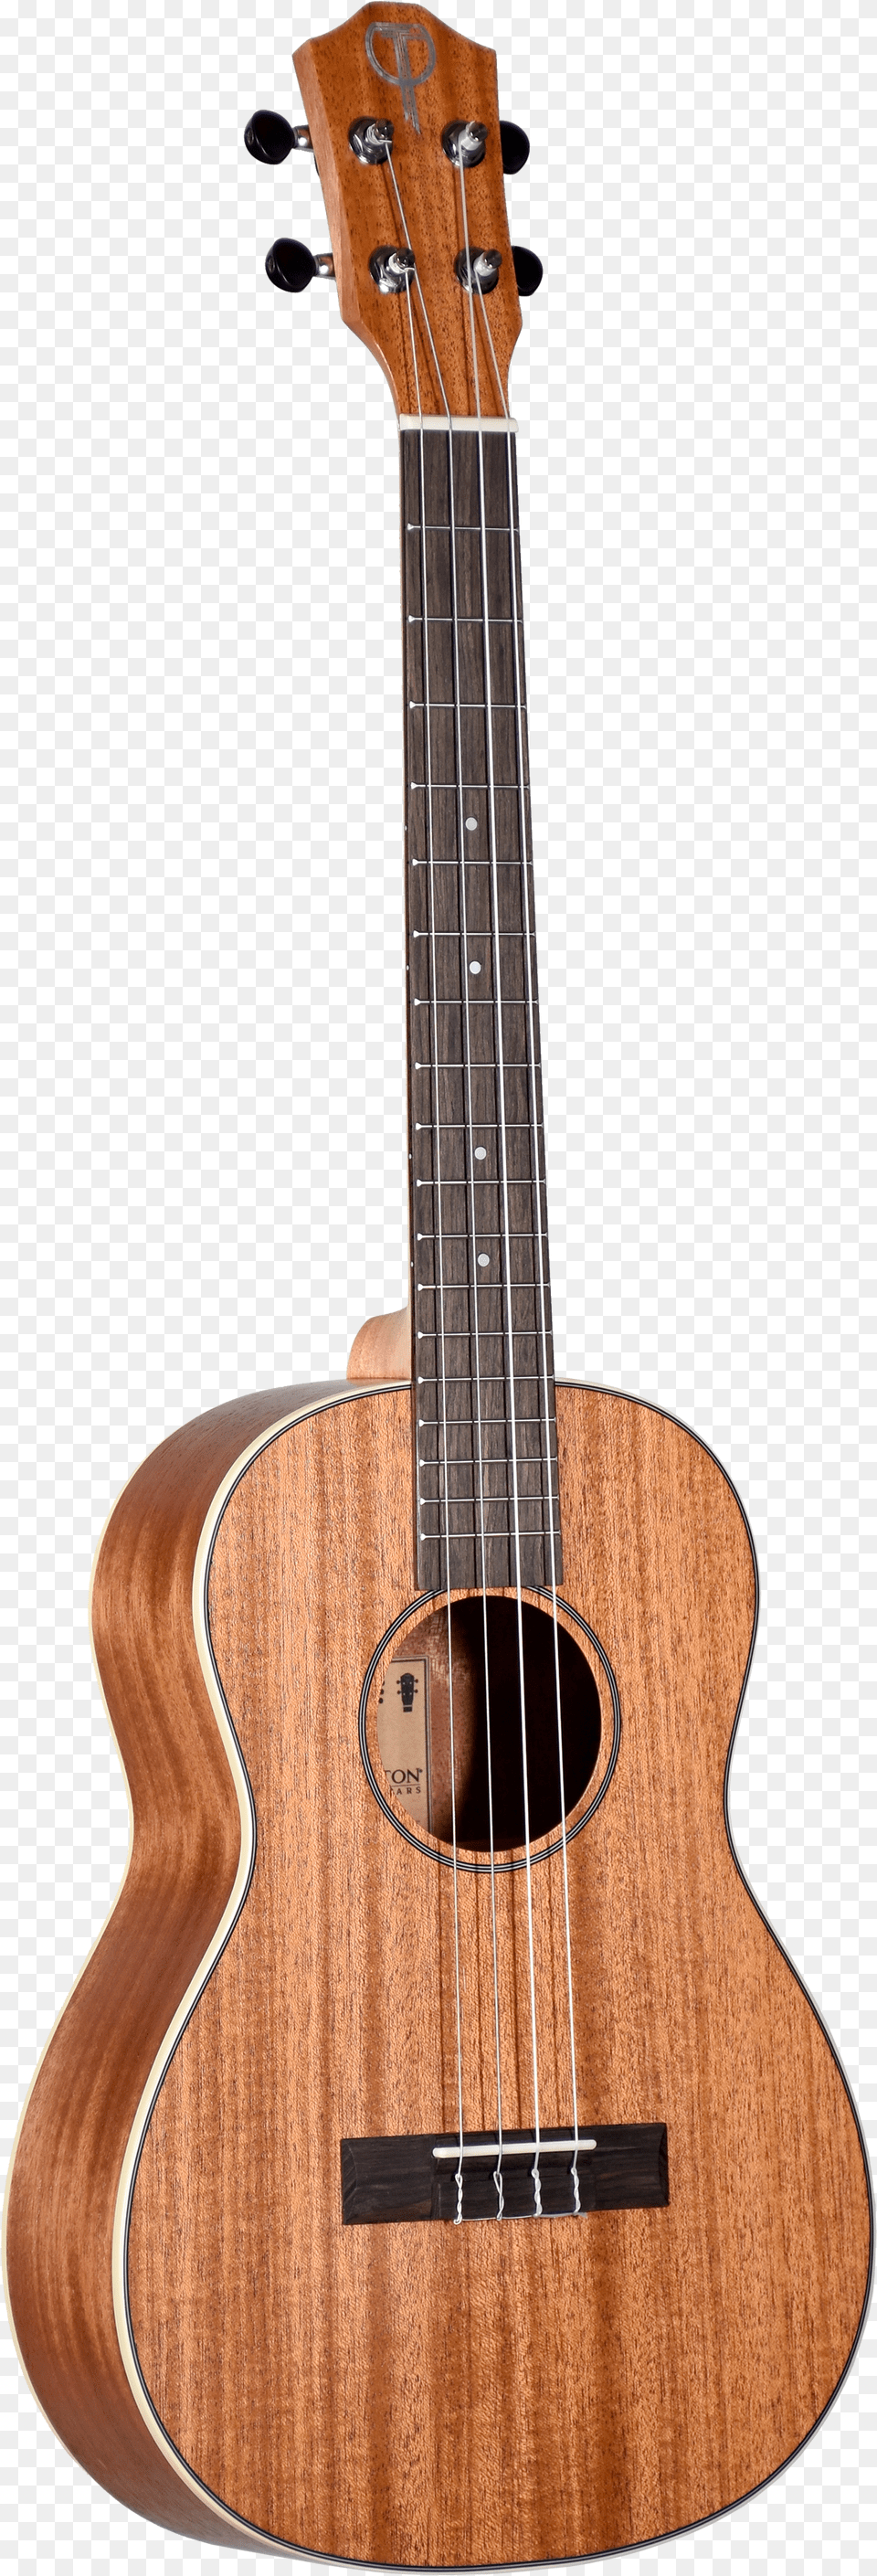 Yamaha Classical Guitar Cutaway Free Transparent Png